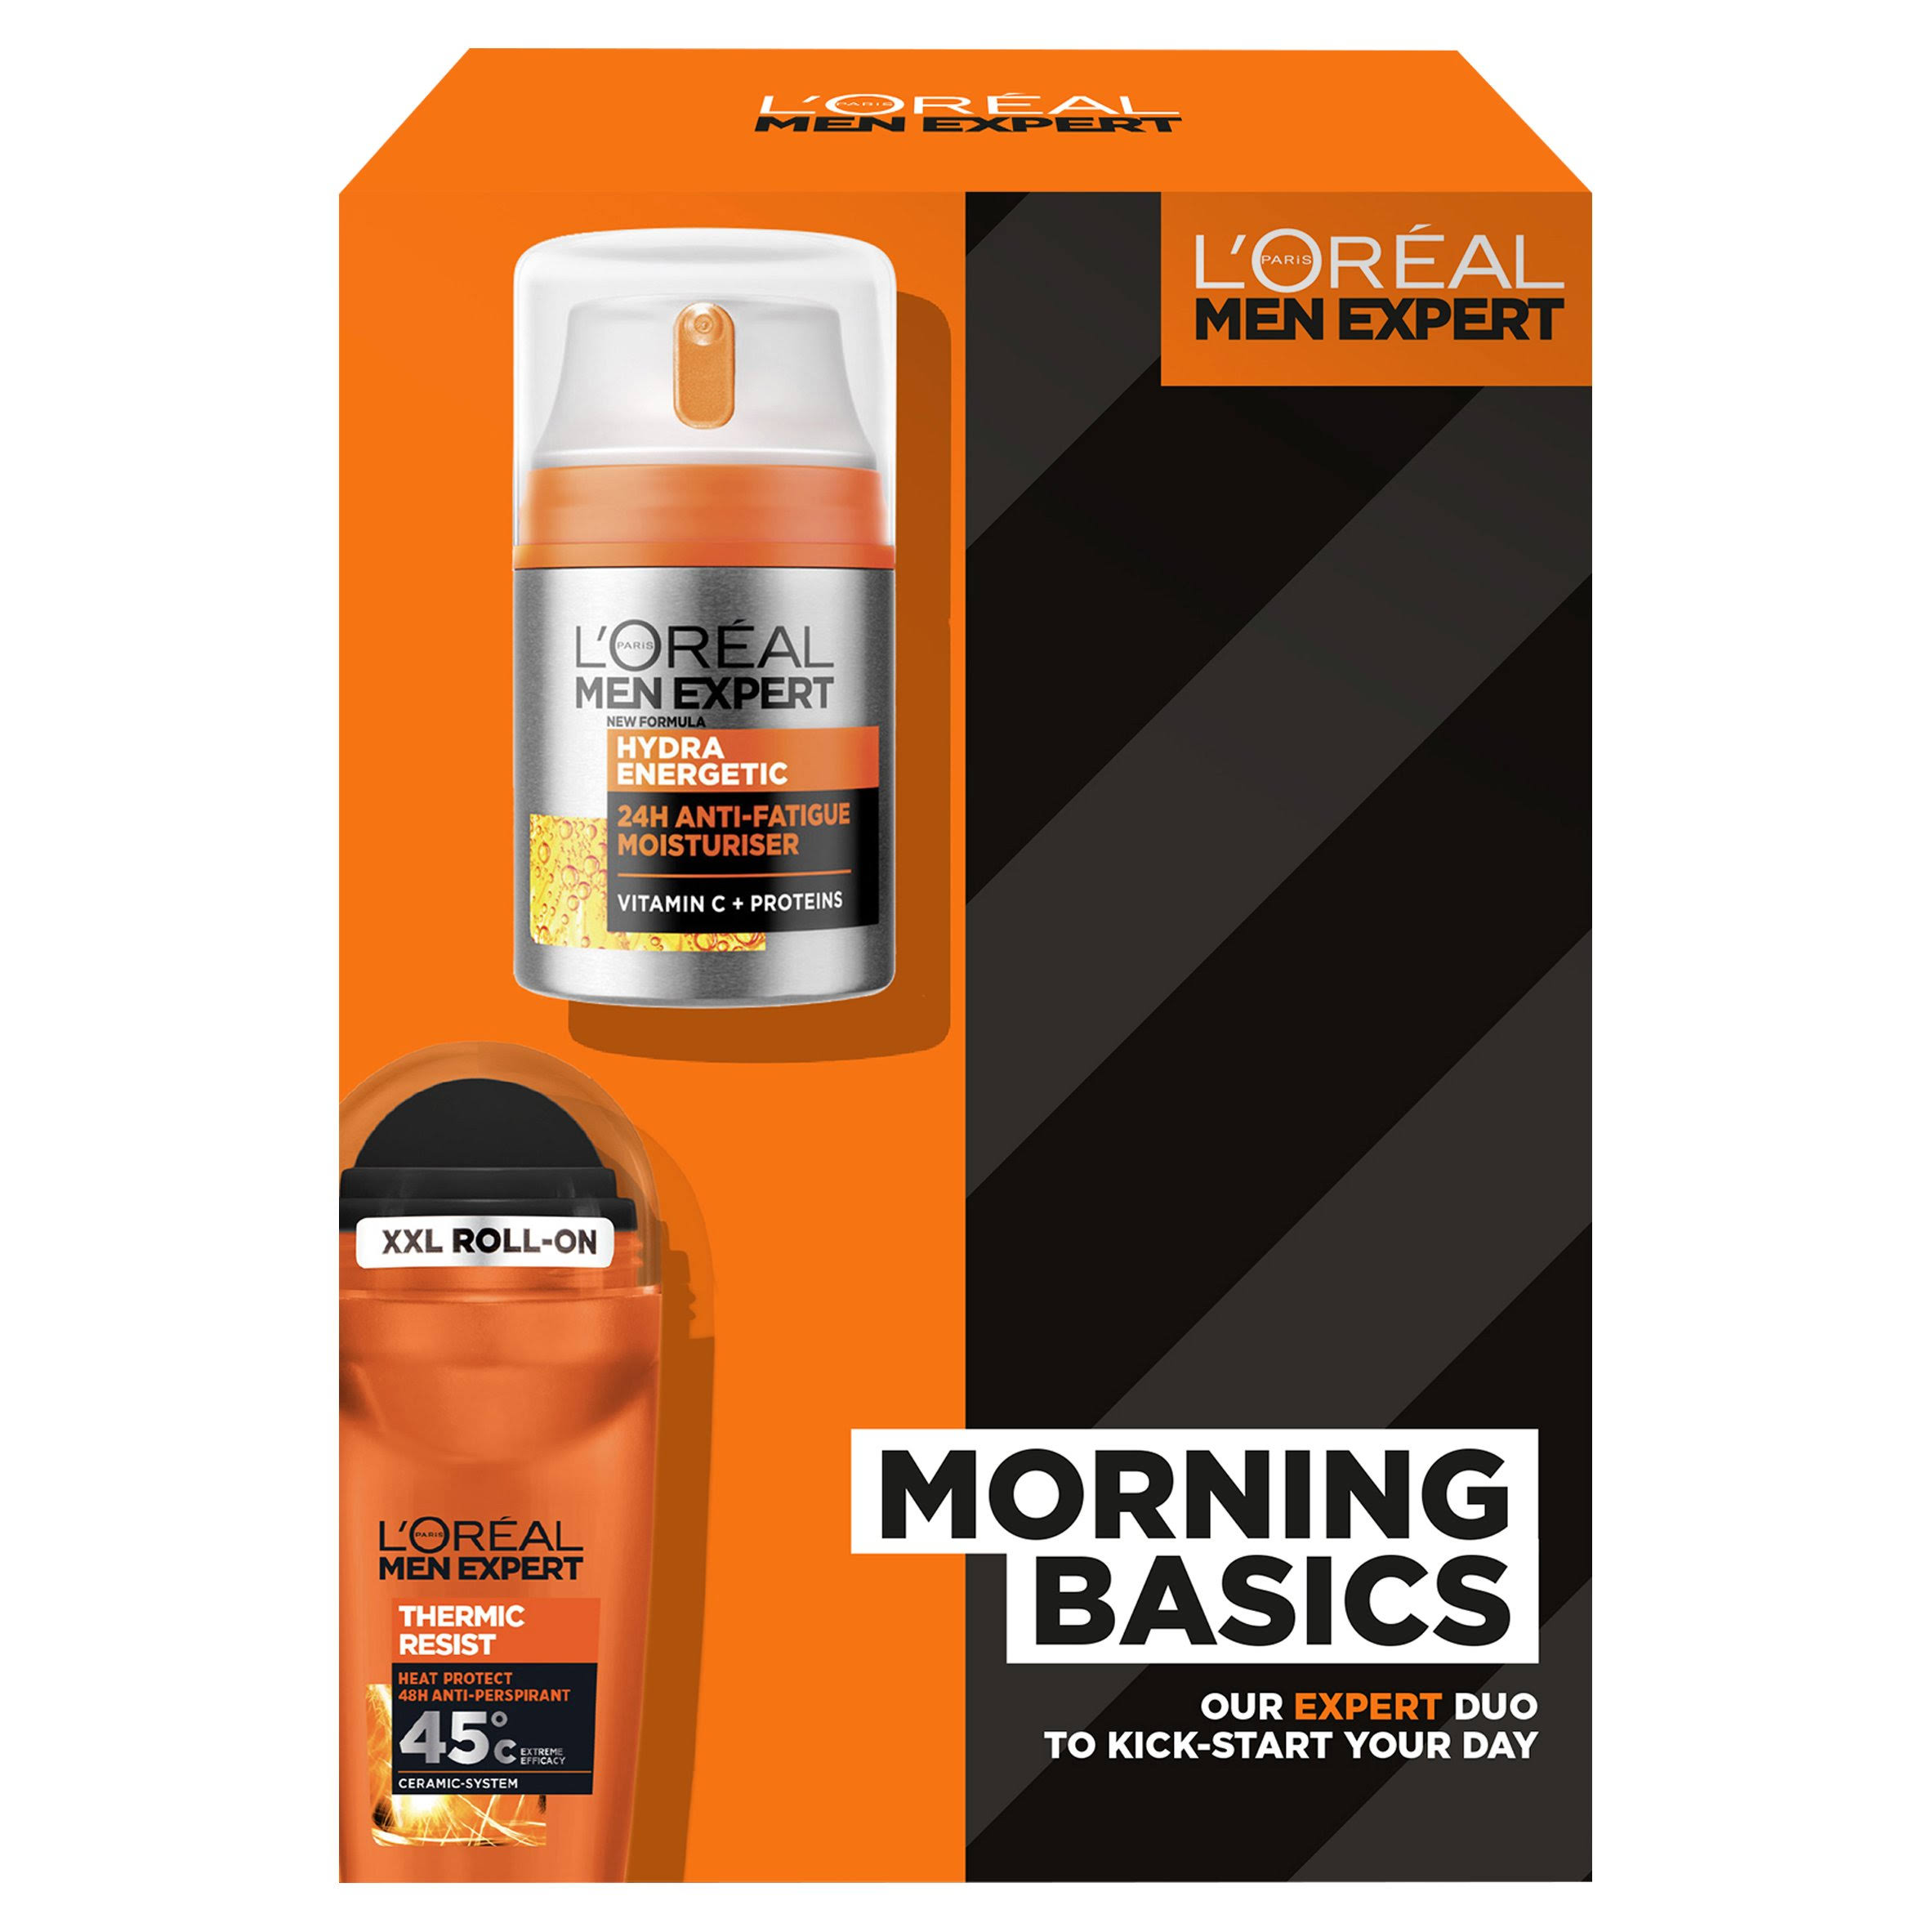 L'Oreal Men Expert Morning Basics Gift Set